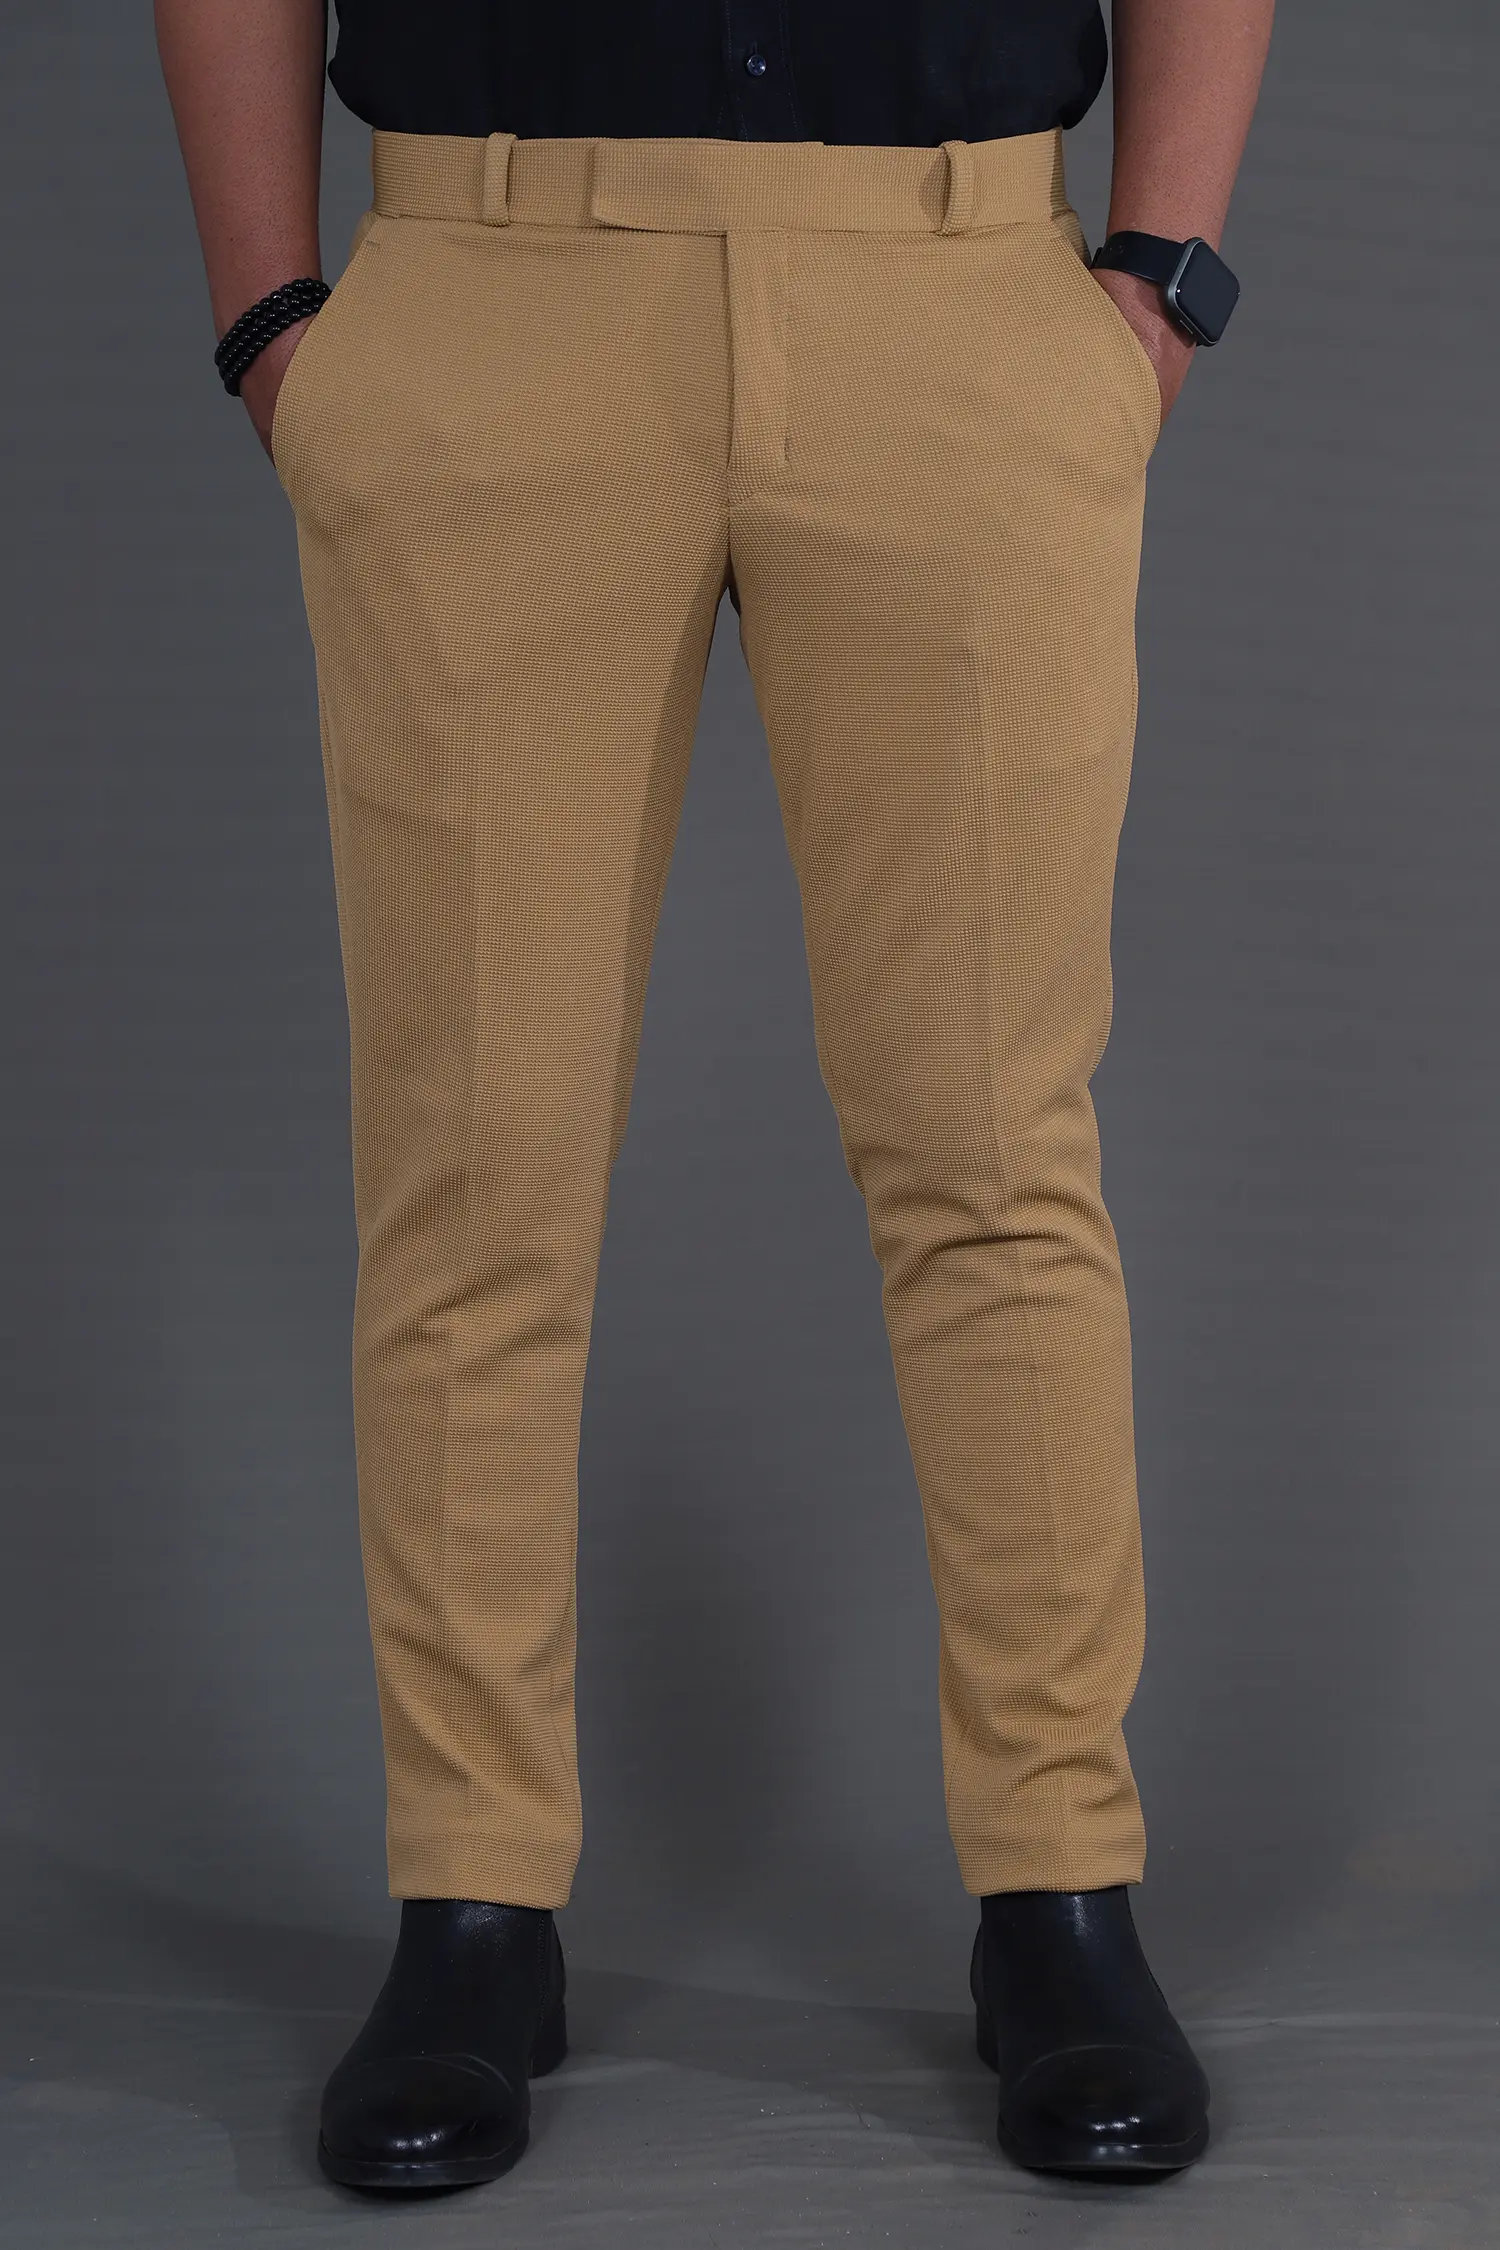 KACHCHAP Men's Formal Pant Stretchable Cotton Lycra - Rebanta Fashion